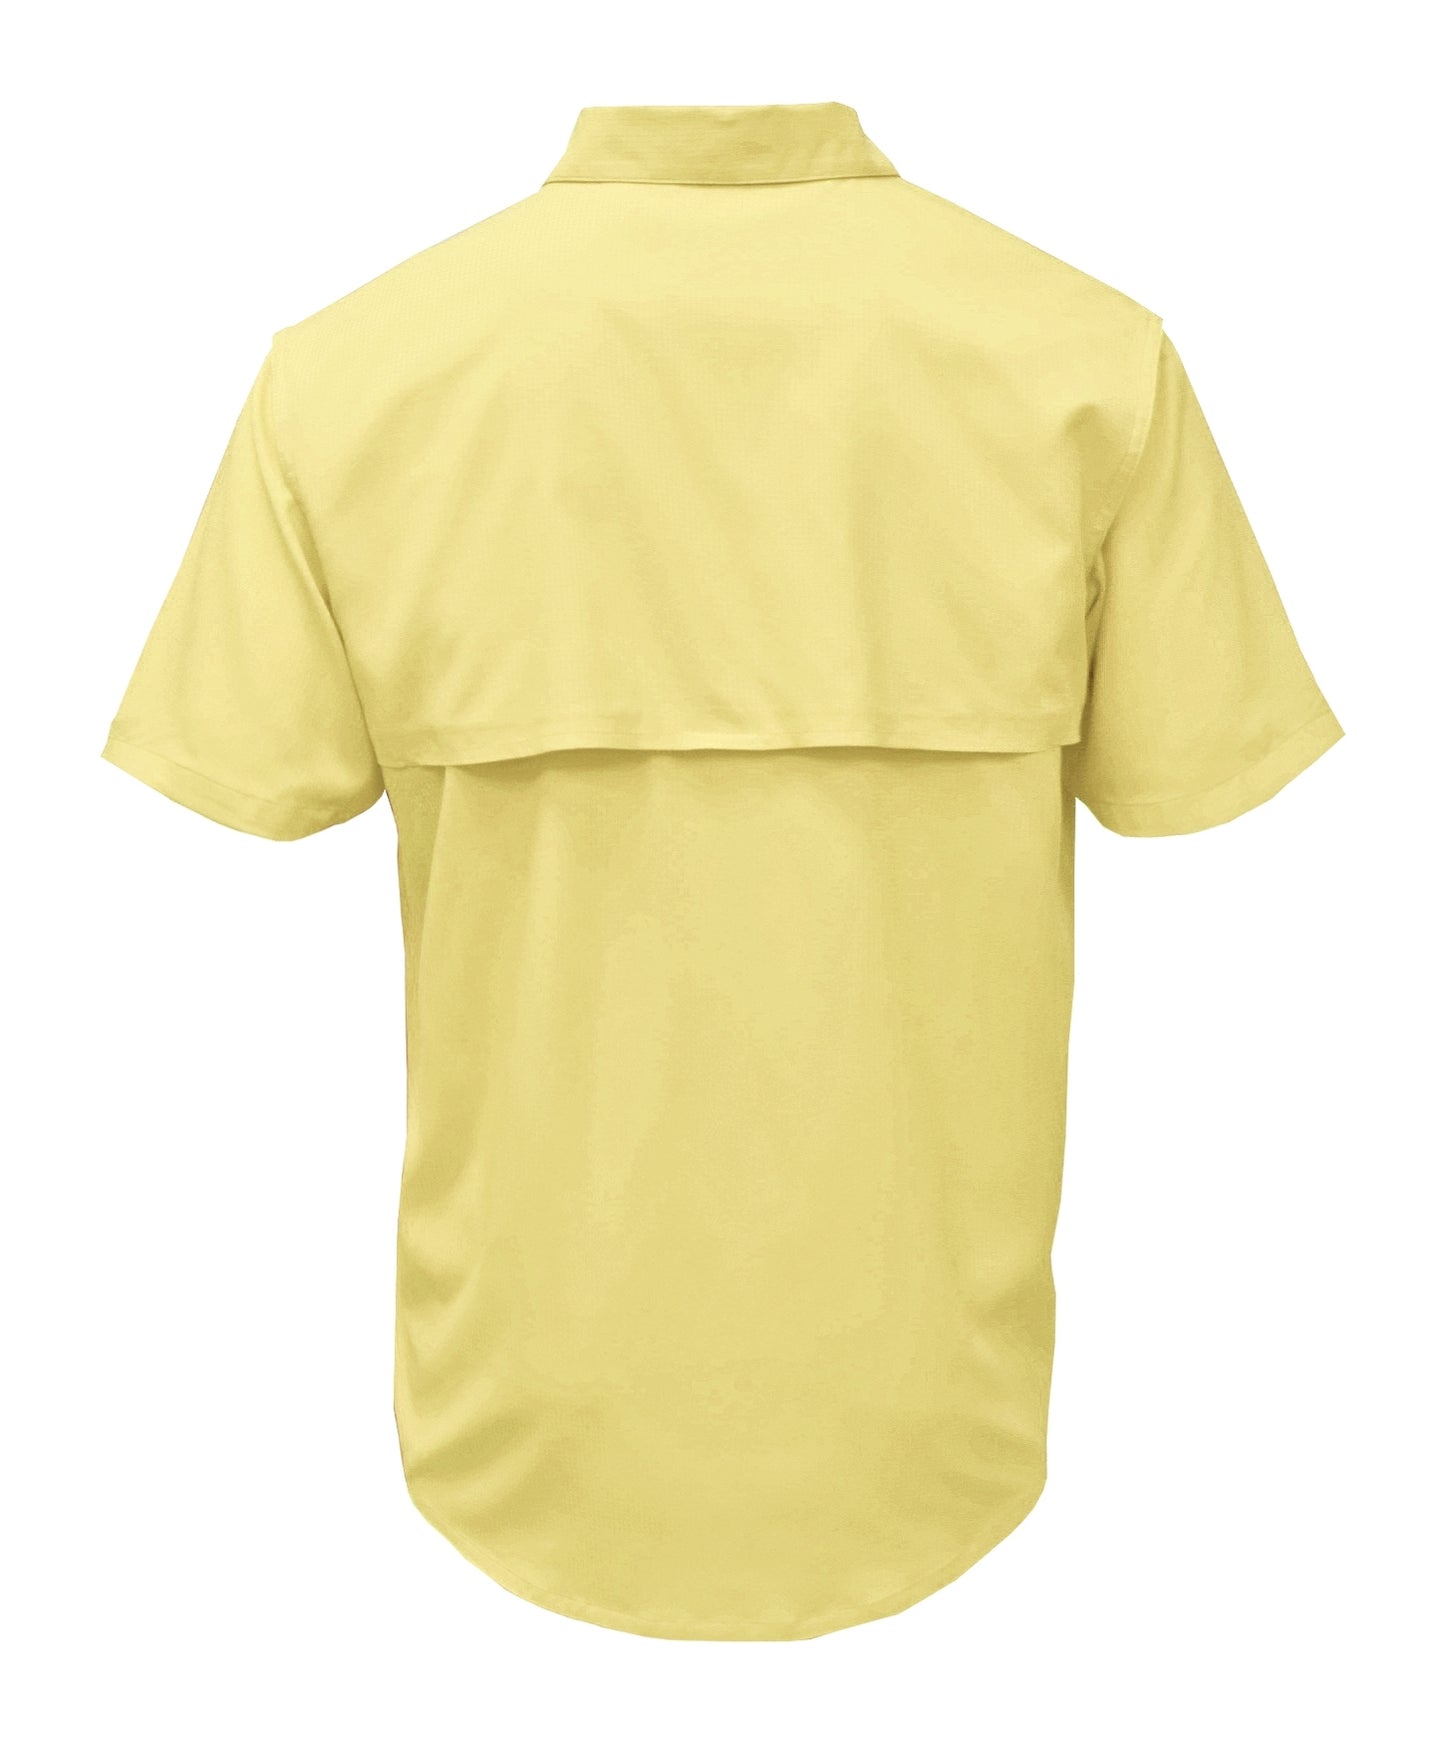 3100 Men's Short Sleeve Fishing Shirt